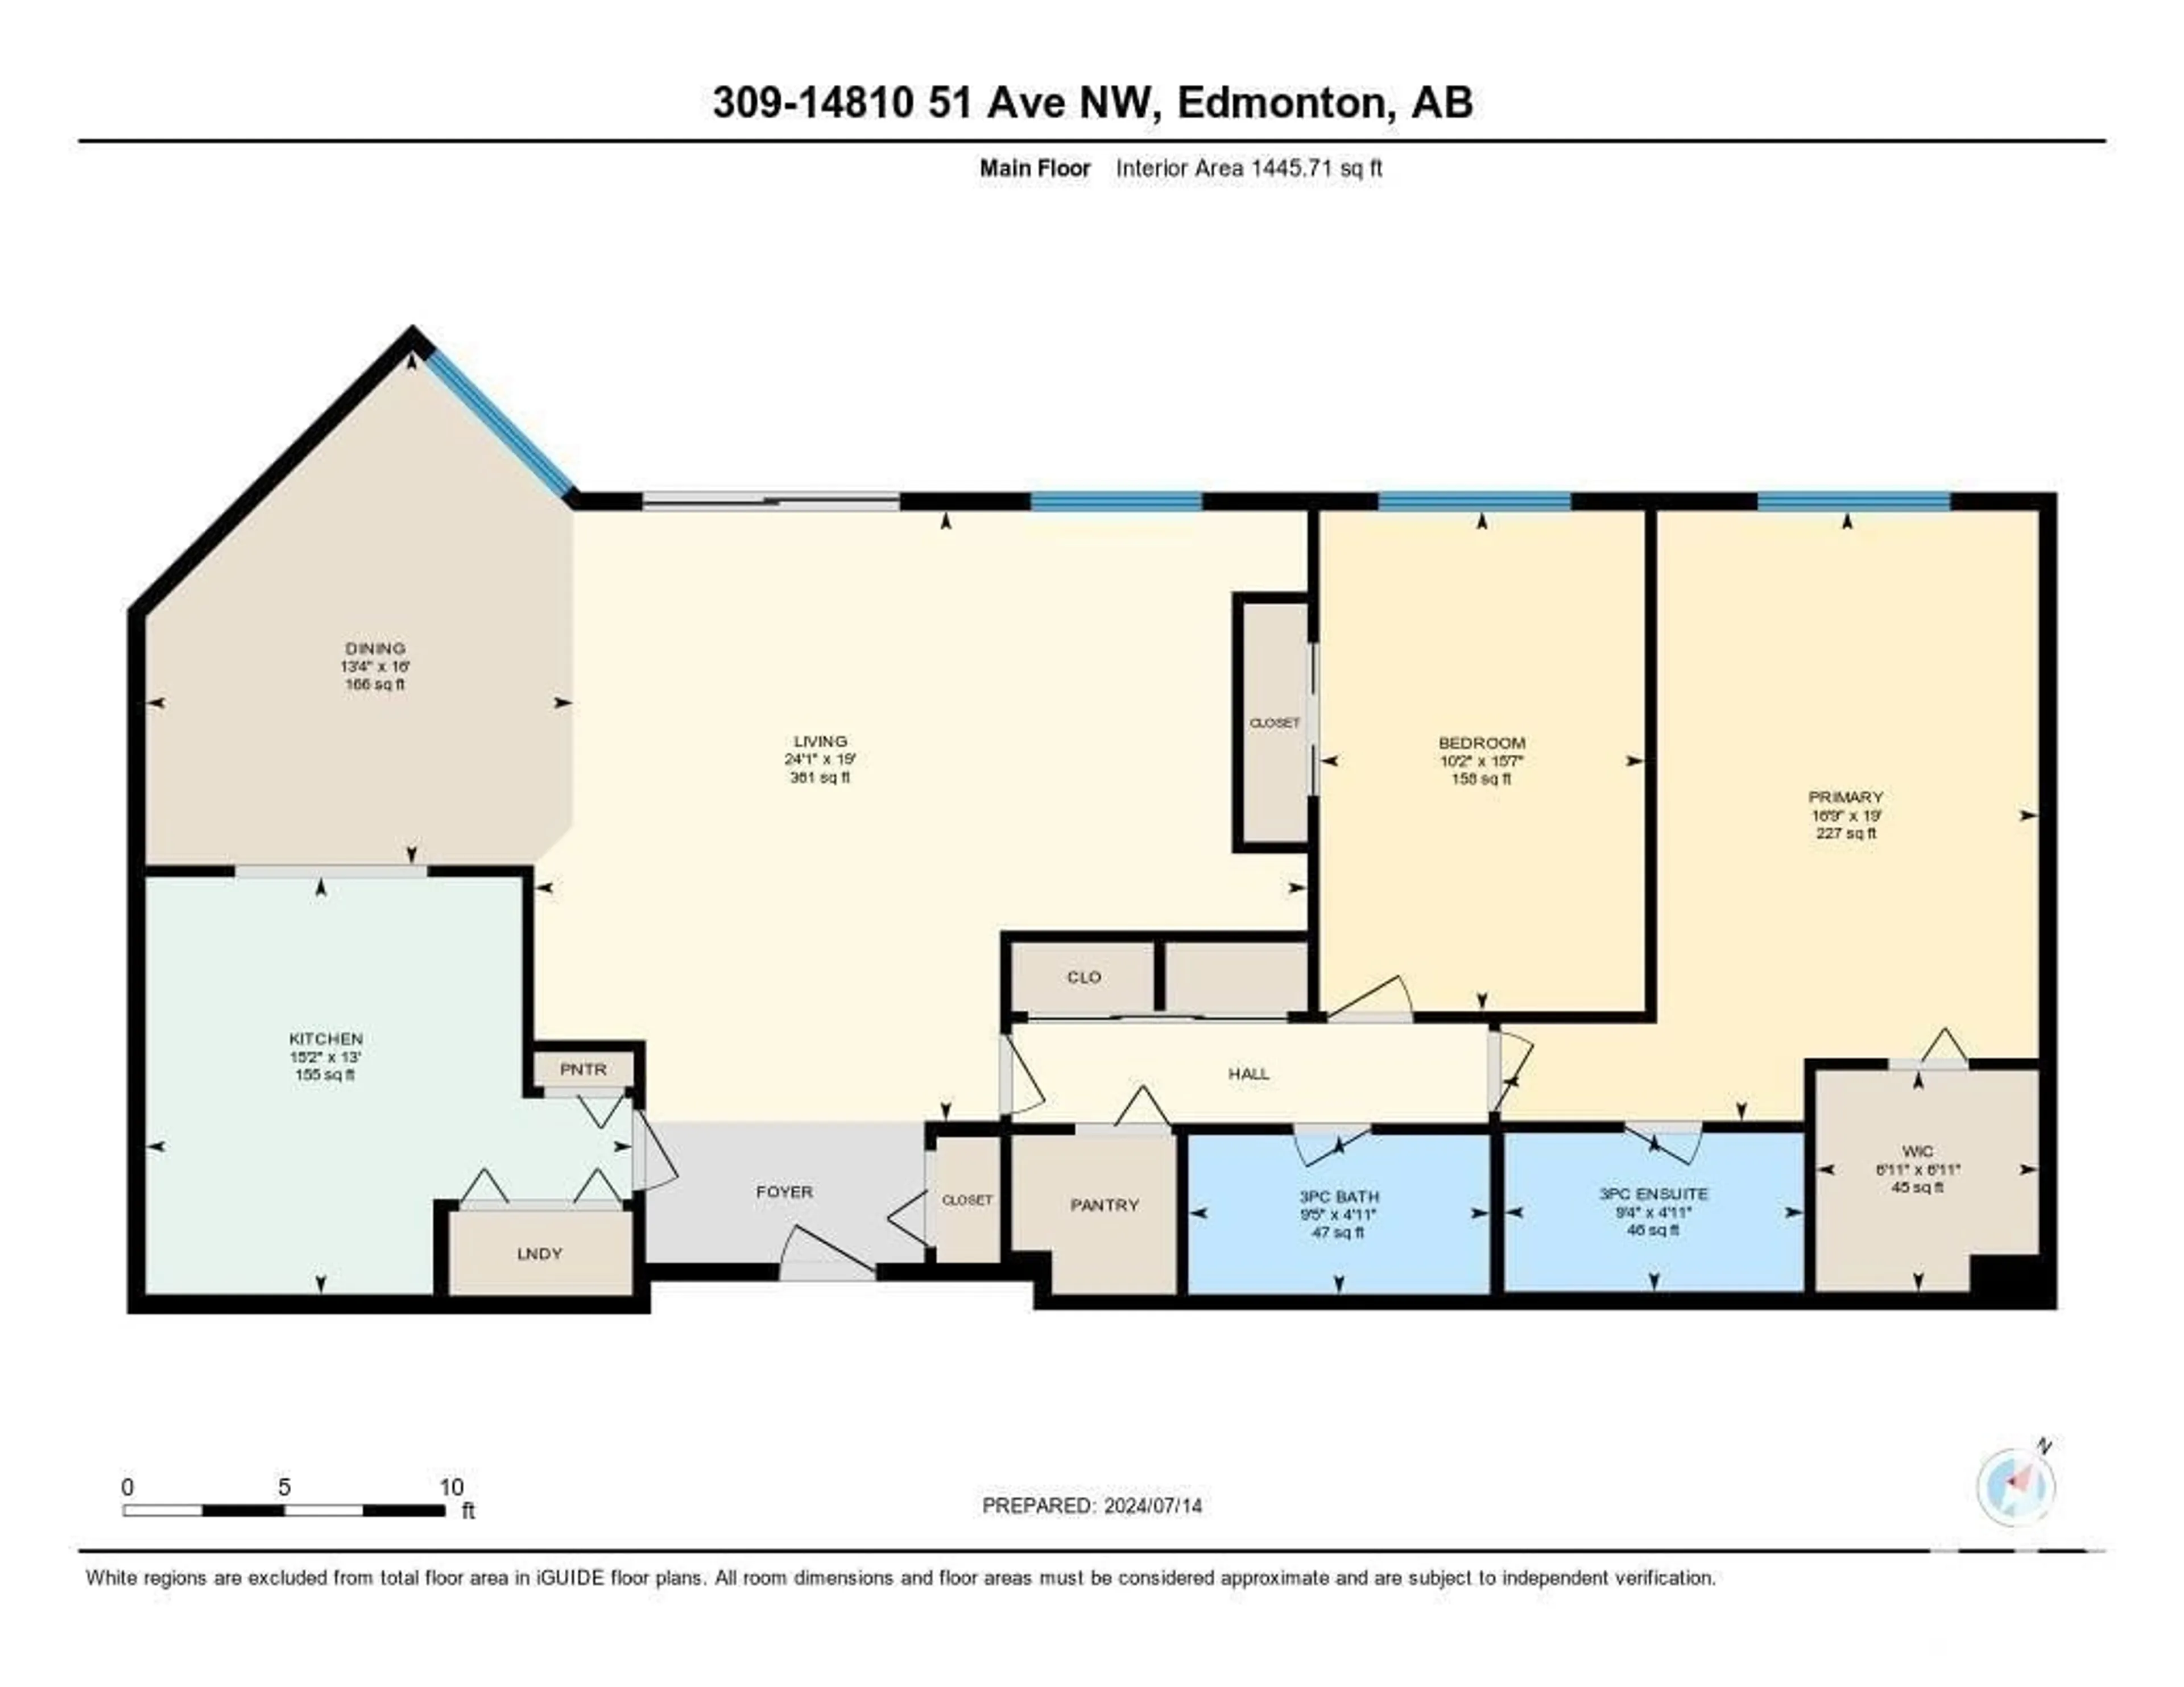 Floor plan for #309 14810 51 AV NW, Edmonton Alberta T6H5G5